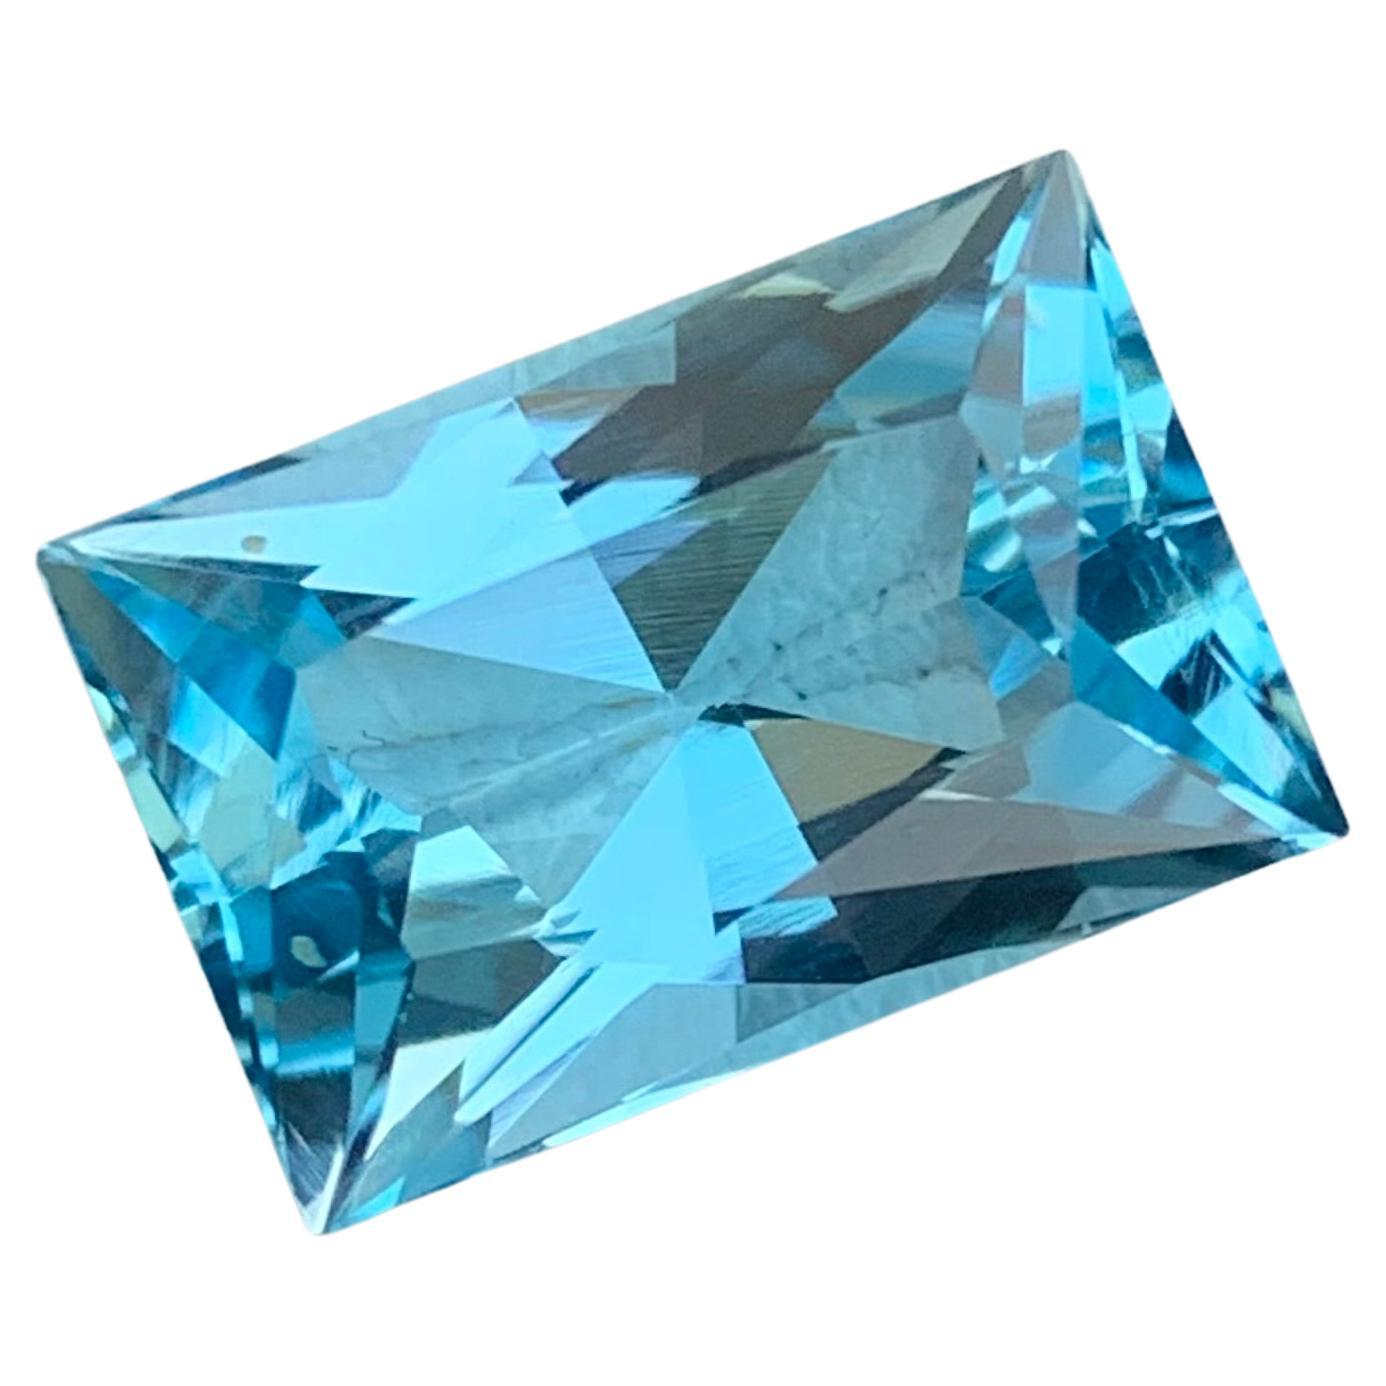 Magnifique topaze bleu ciel facettée de 8,50 carats en forme de baguette du Brésil